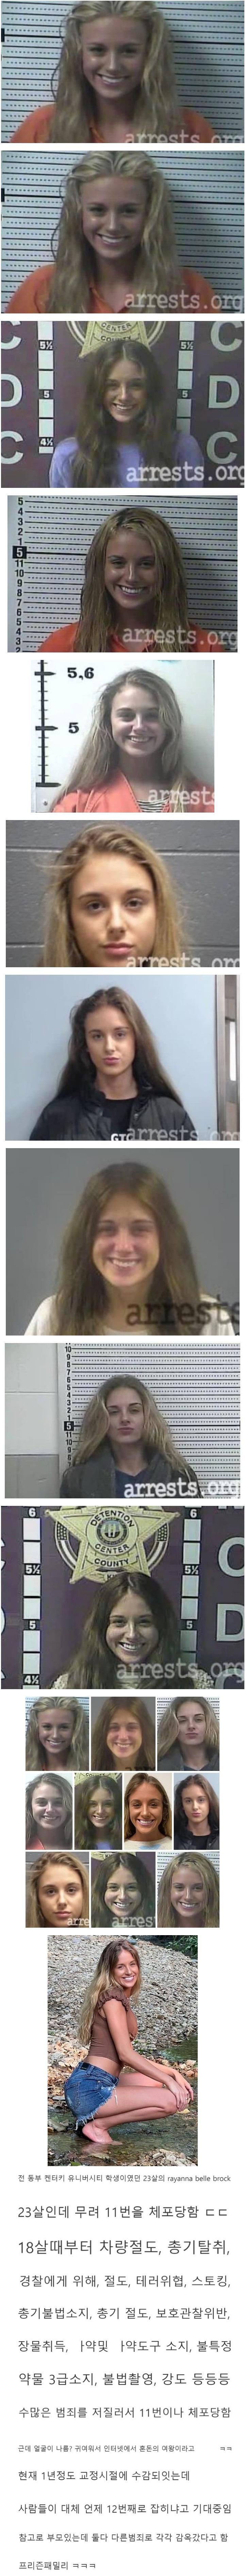 11번이나 체포된 미국 여성.